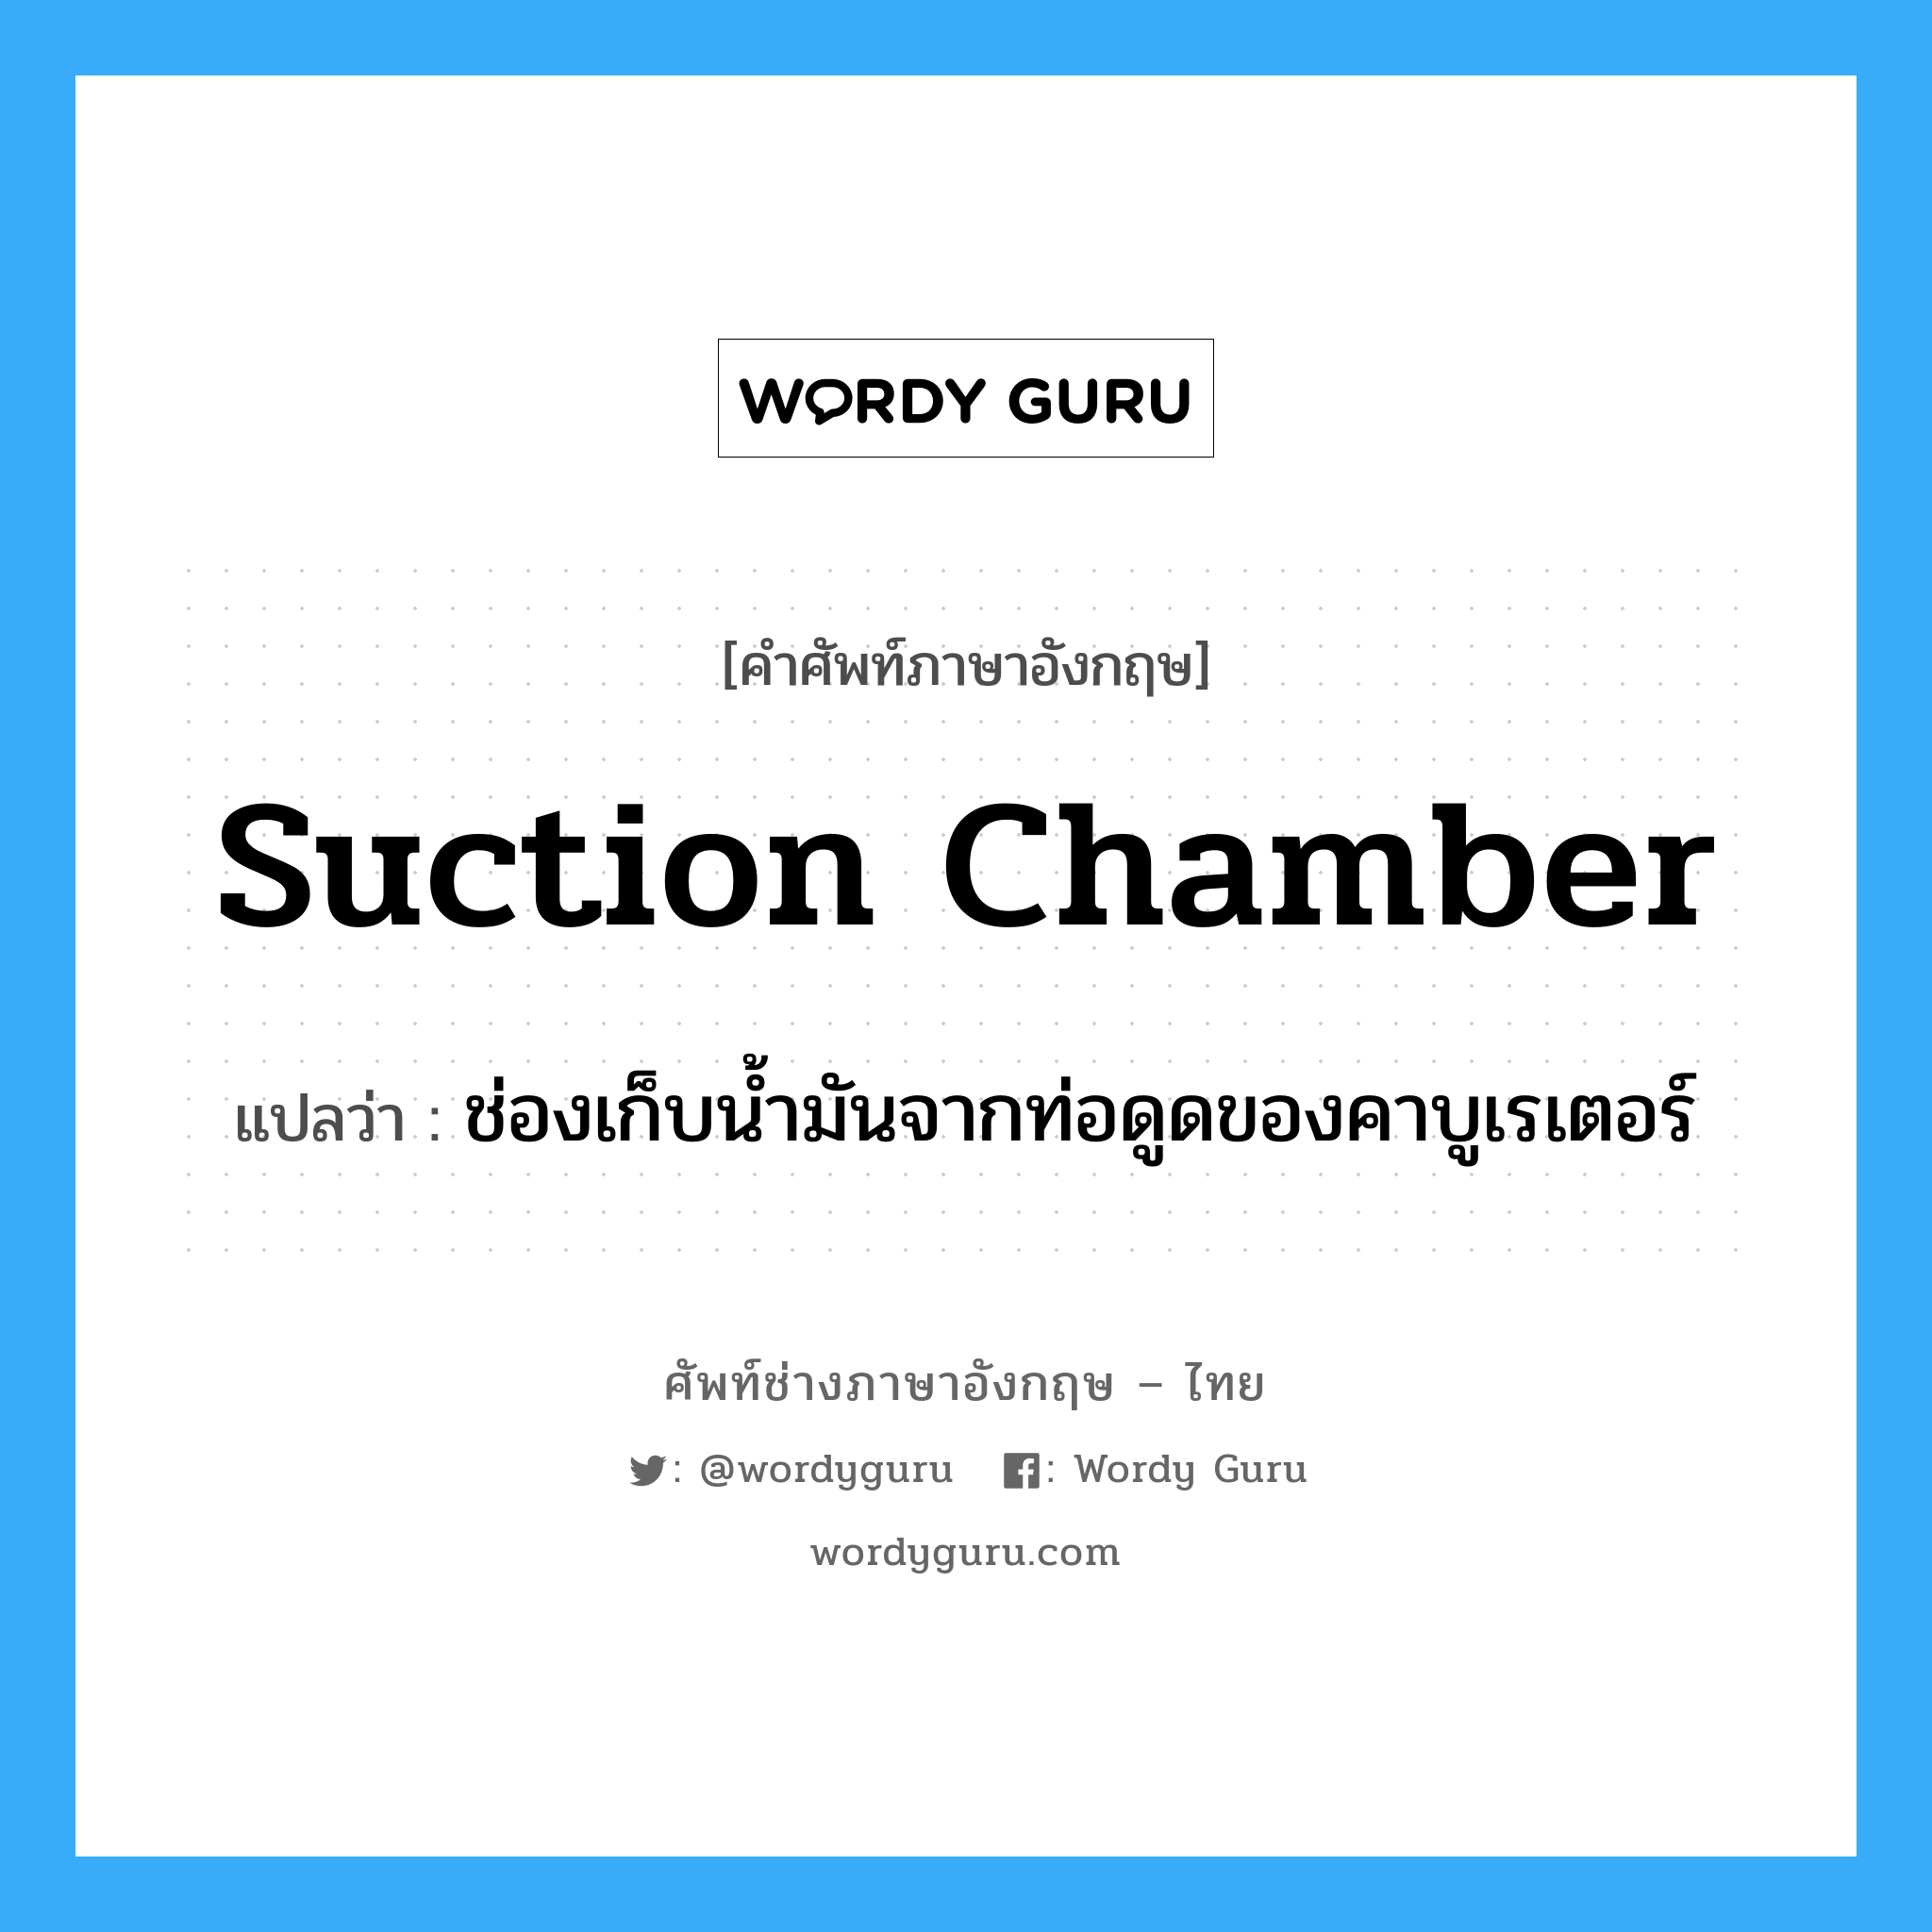 suction chamber แปลว่า?, คำศัพท์ช่างภาษาอังกฤษ - ไทย suction chamber คำศัพท์ภาษาอังกฤษ suction chamber แปลว่า ช่องเก็บน้ำมันจากท่อดูดของคาบูเรเตอร์